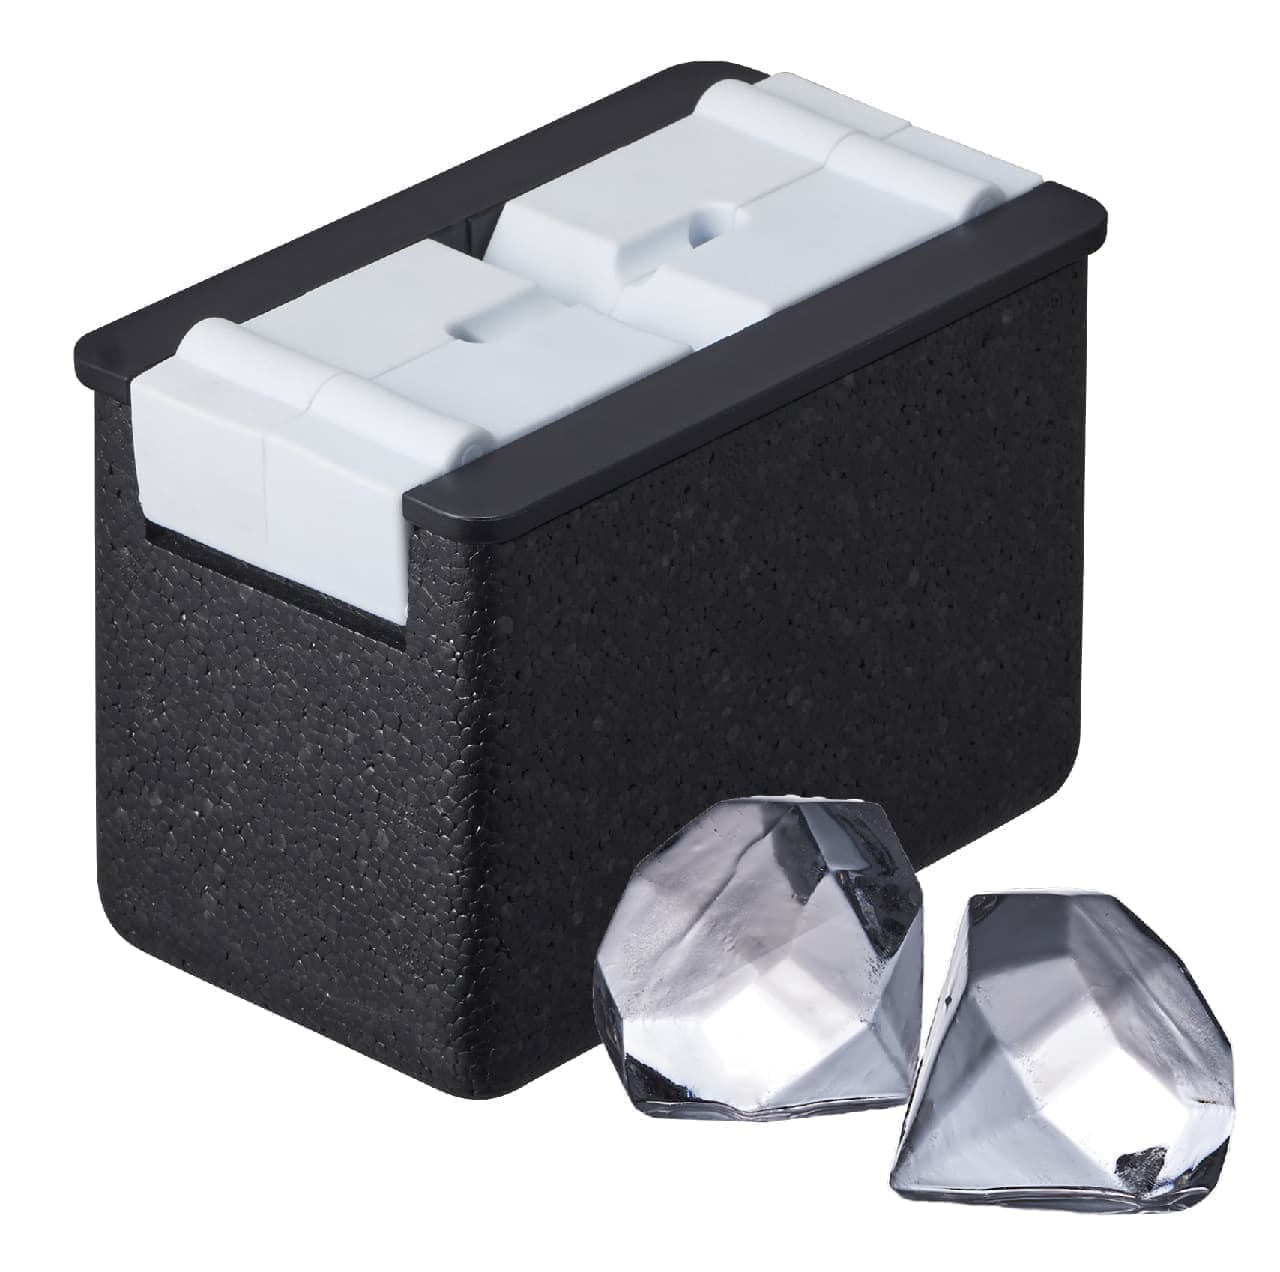 ドウシシャ、自宅で透明な氷を作ることができる容器「透明氷」